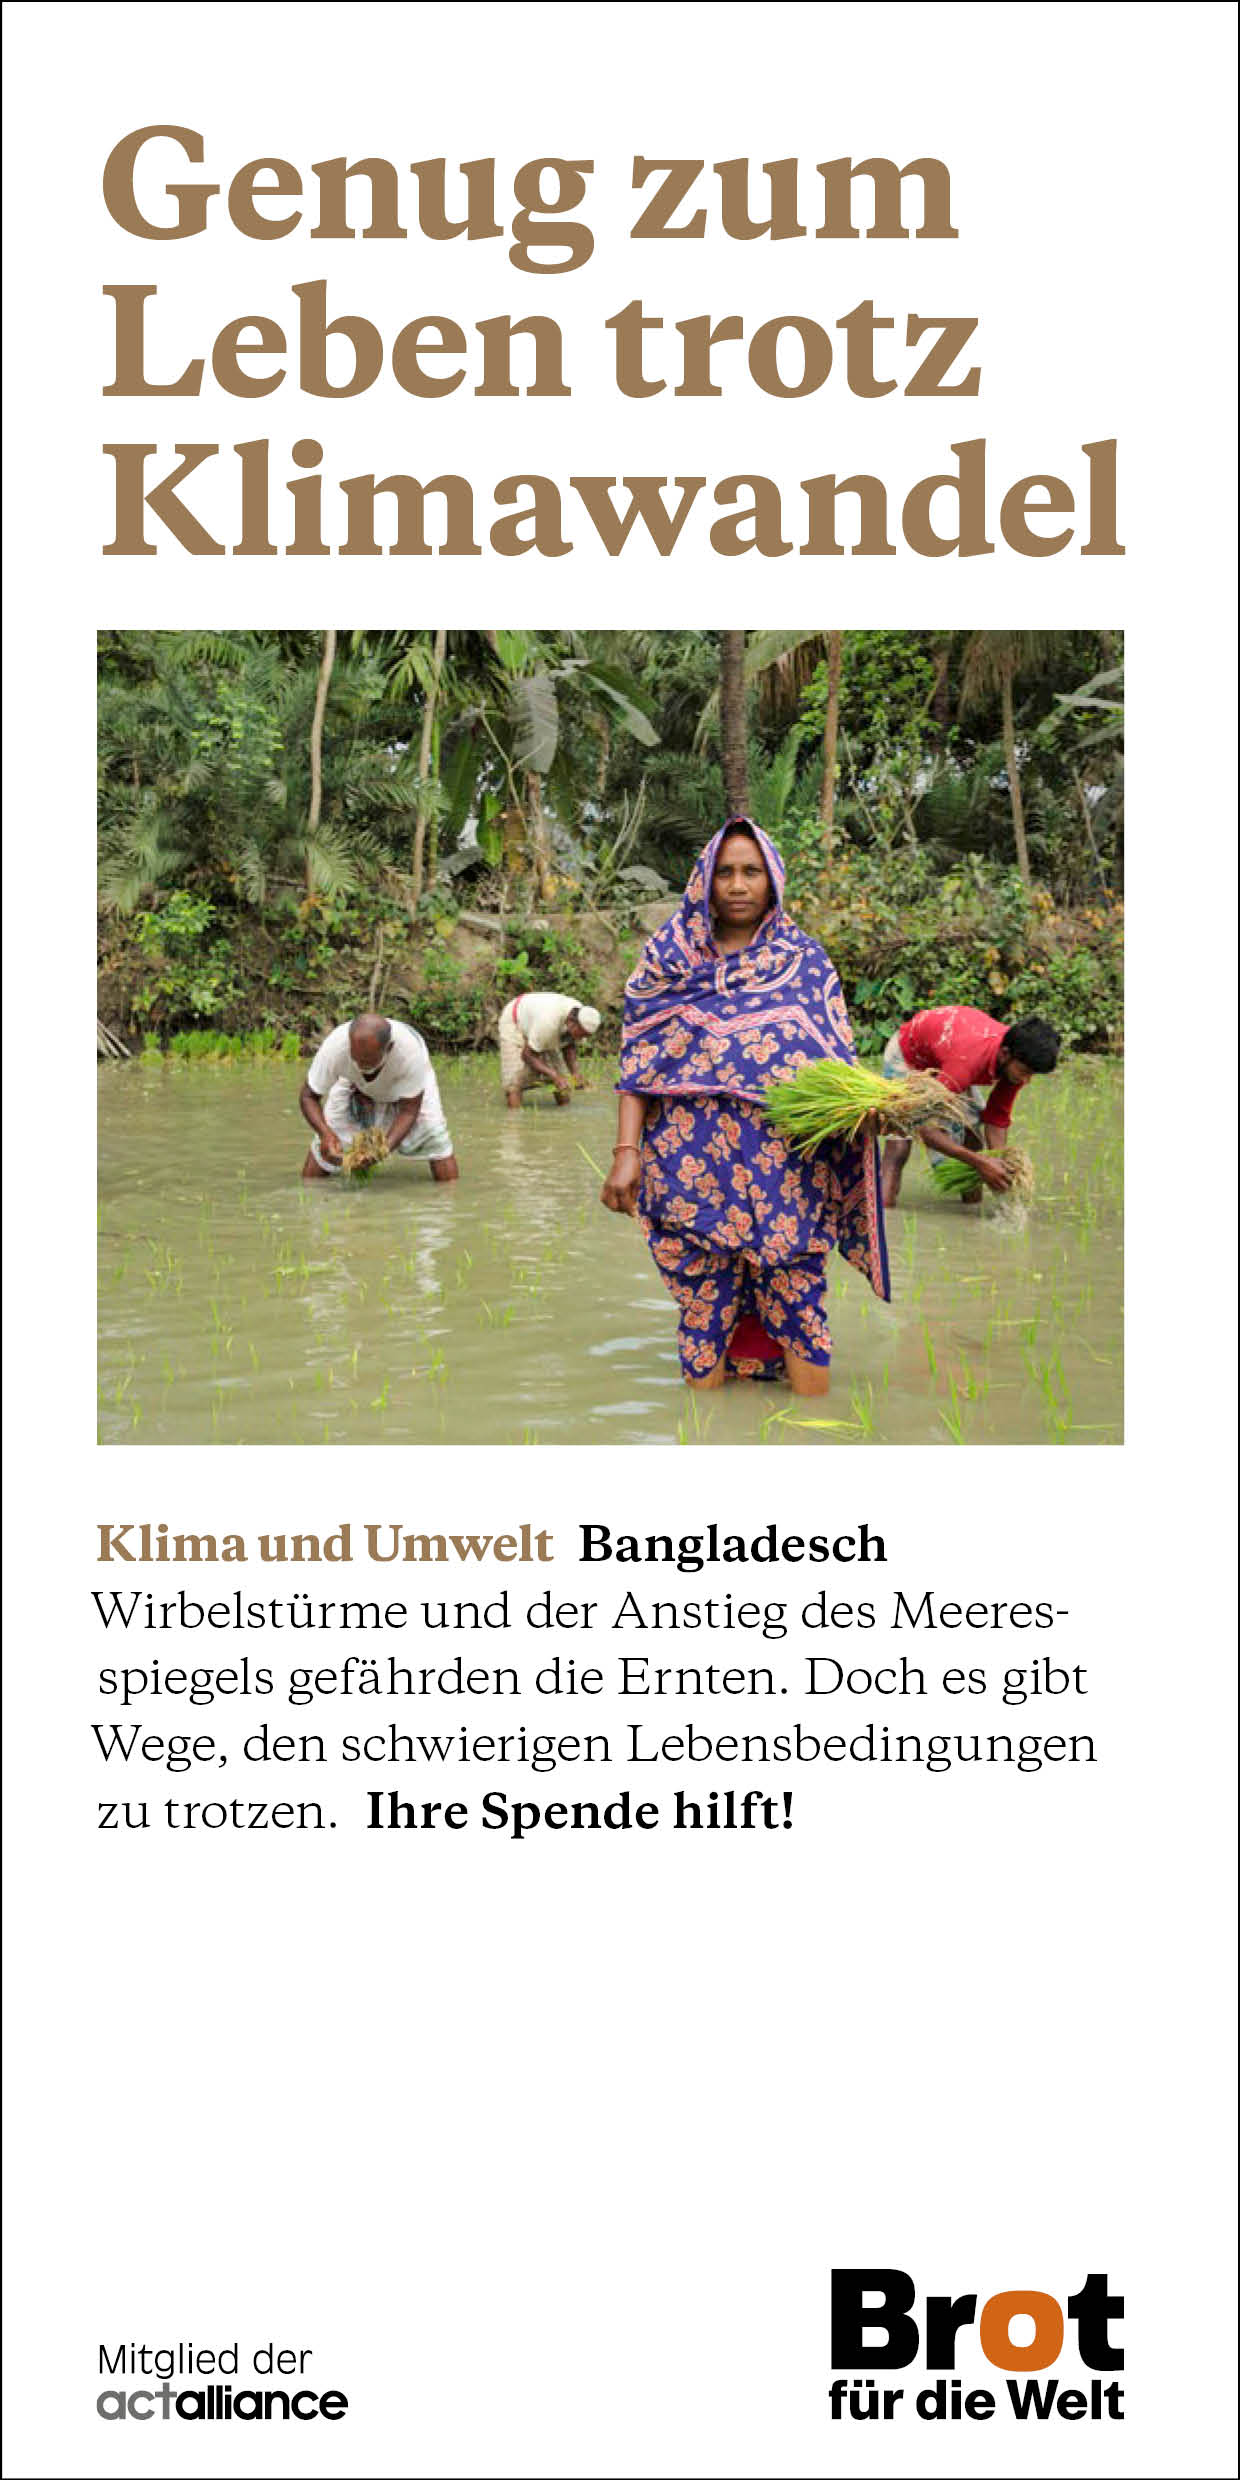 Bangladesch - Genug zum Leben trotz Klimawandel (Faltblatt Bewahrung der Schöpfung)